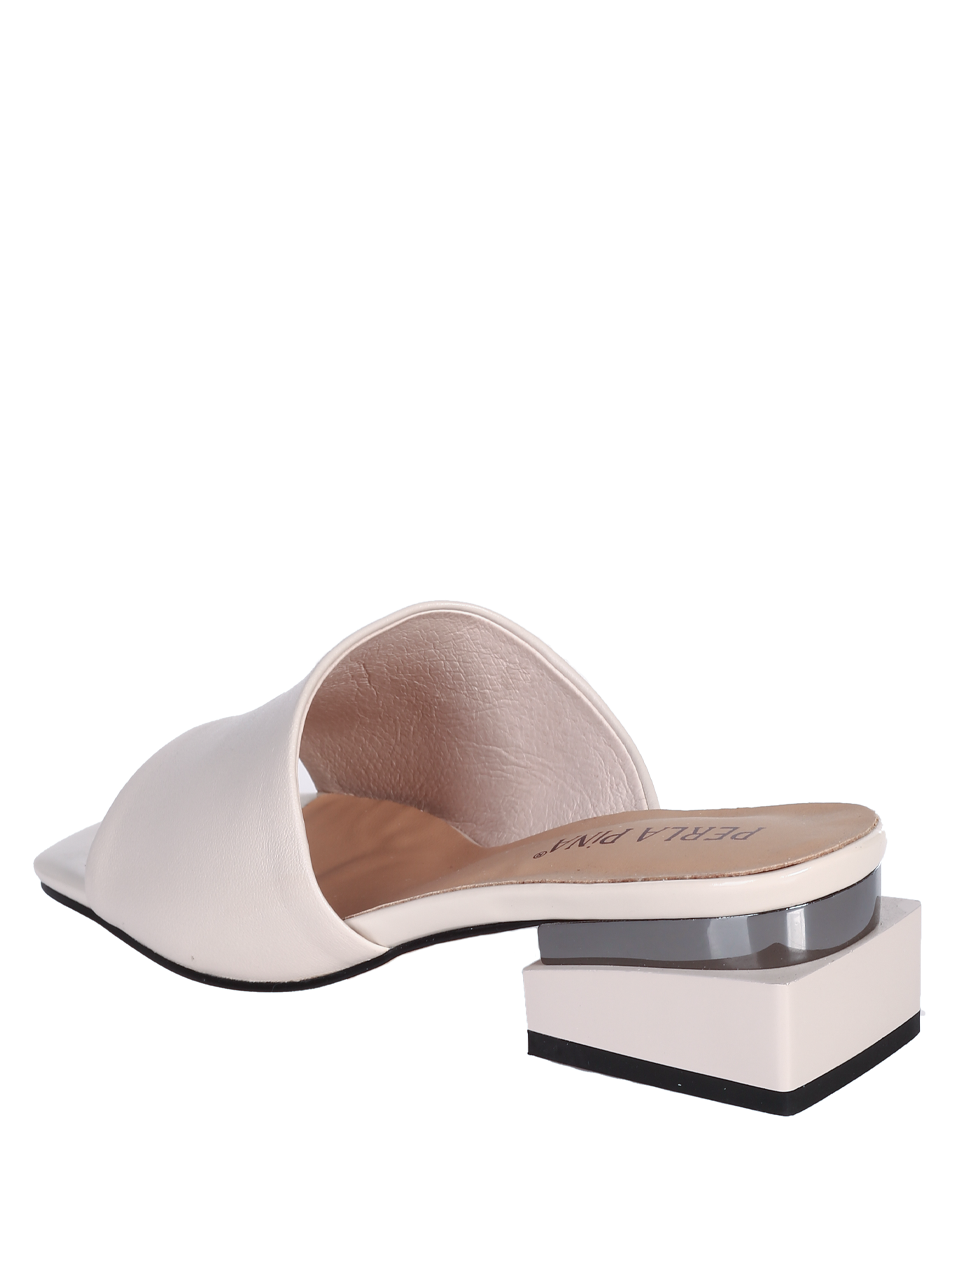 Ежедневни дамски чехли от естествена кожа в бяло T27-3 off white